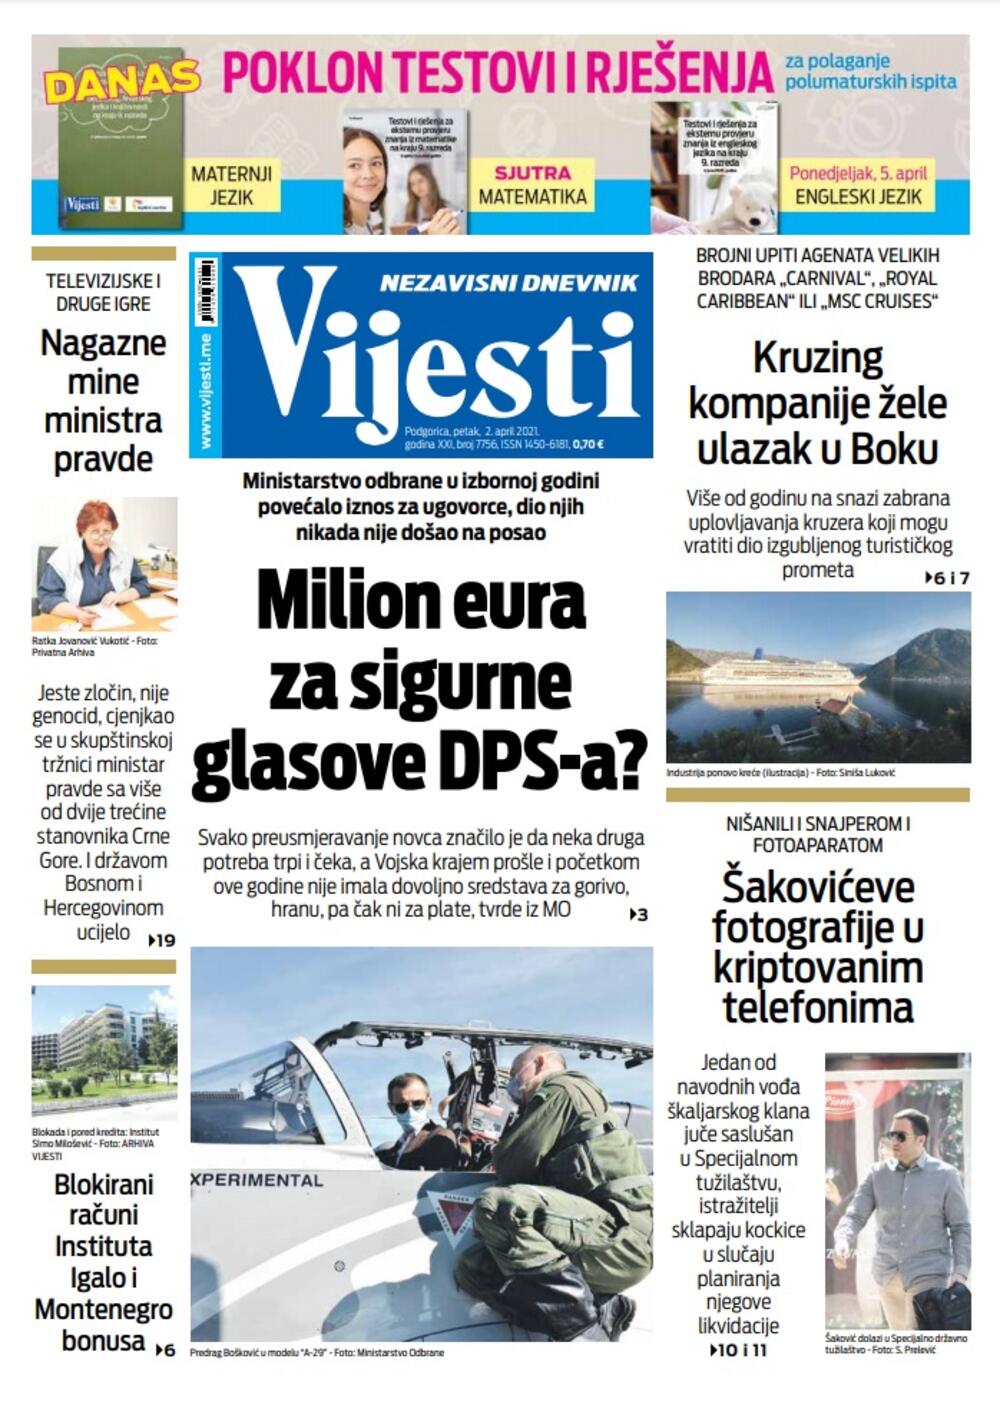 Naslovna strana "Vijesti" za 2. april 2021., Foto: Vijesti